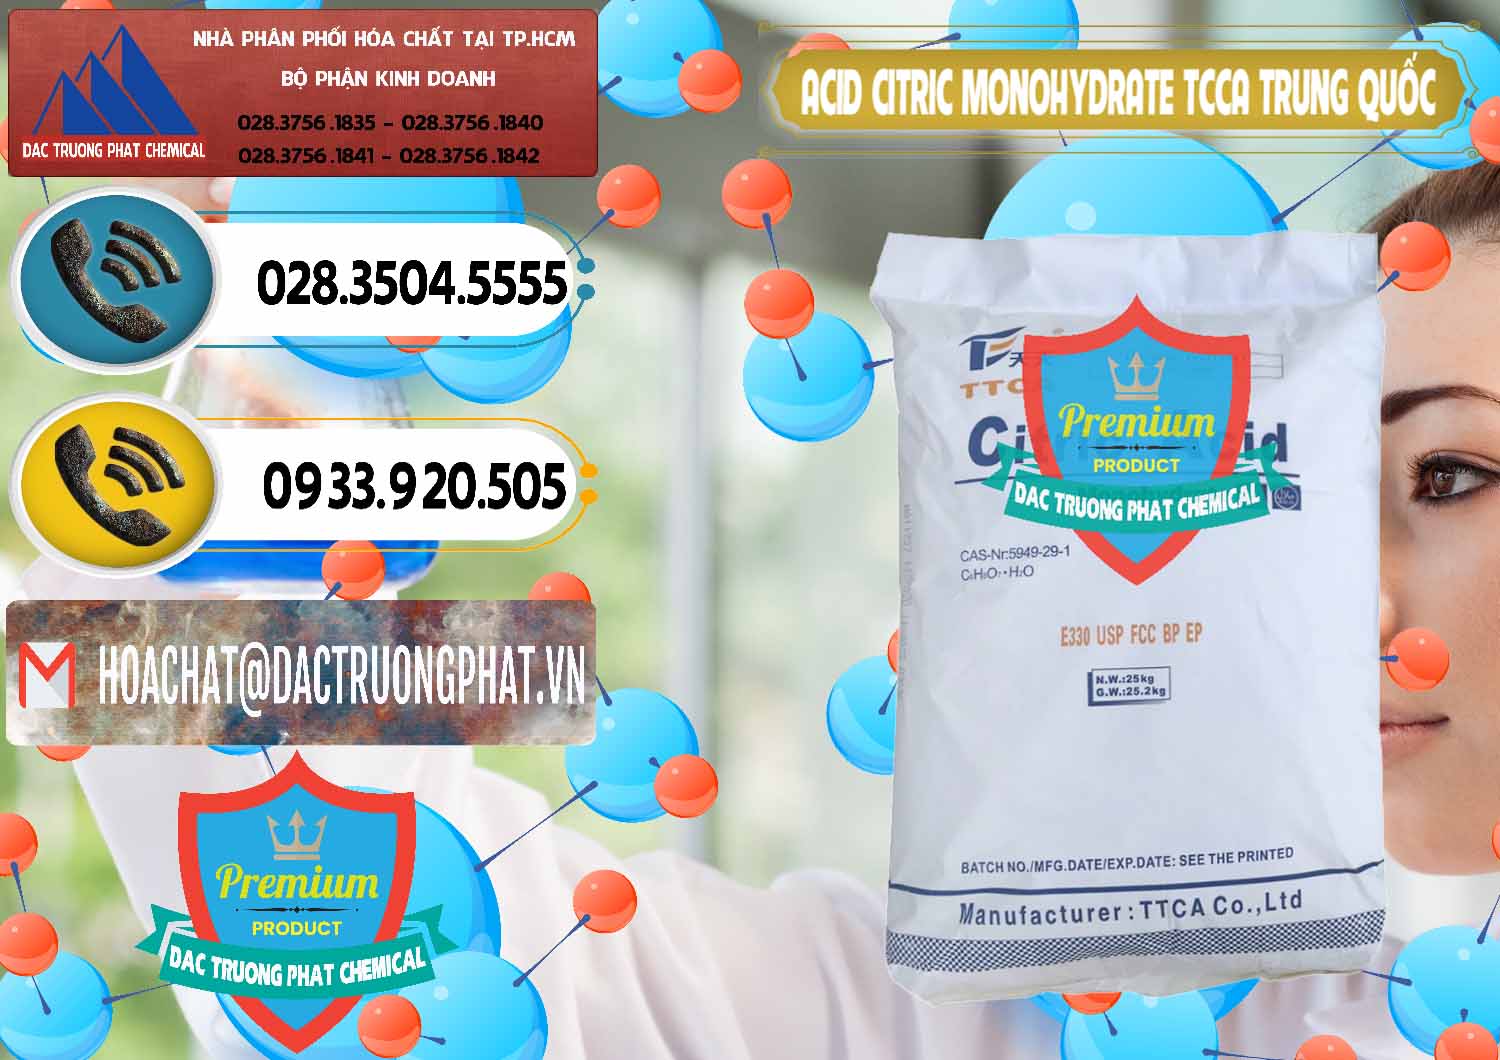 Cty chuyên nhập khẩu - bán Acid Citric - Axit Citric Monohydrate TCCA Trung Quốc China - 0441 - Nơi nhập khẩu ( cung cấp ) hóa chất tại TP.HCM - hoachatdetnhuom.vn